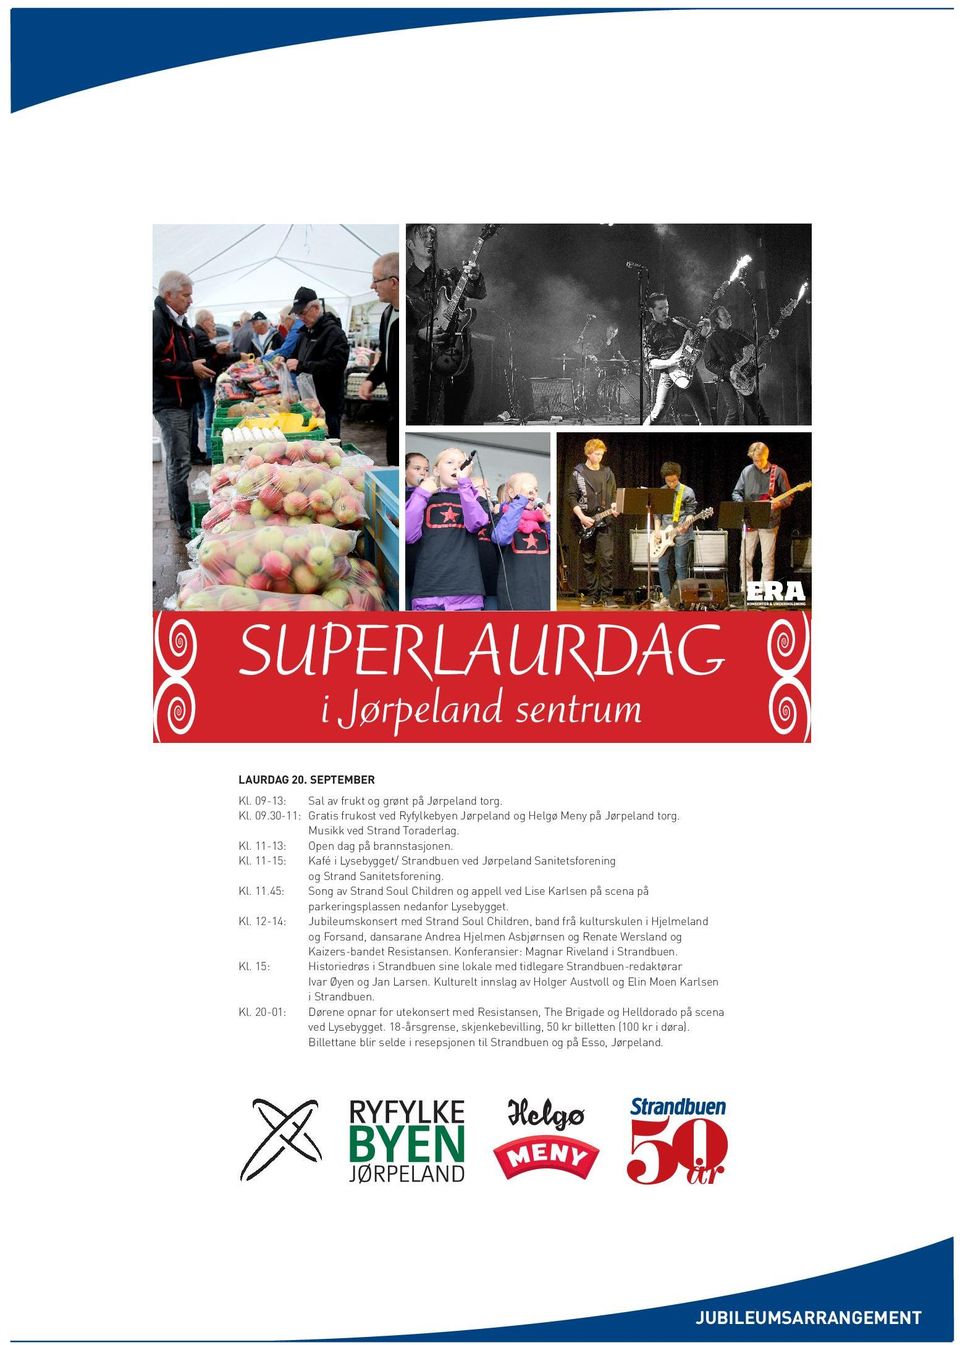 Kl. 12-14: Jubileumskonsert med Strand Soul Children, band frå kulturskulen i Hjelmeland og Forsand, dansarane Andrea Hjelmen Asbjørnsen og Renate Wersland og Kaizers-bandet Resistansen.